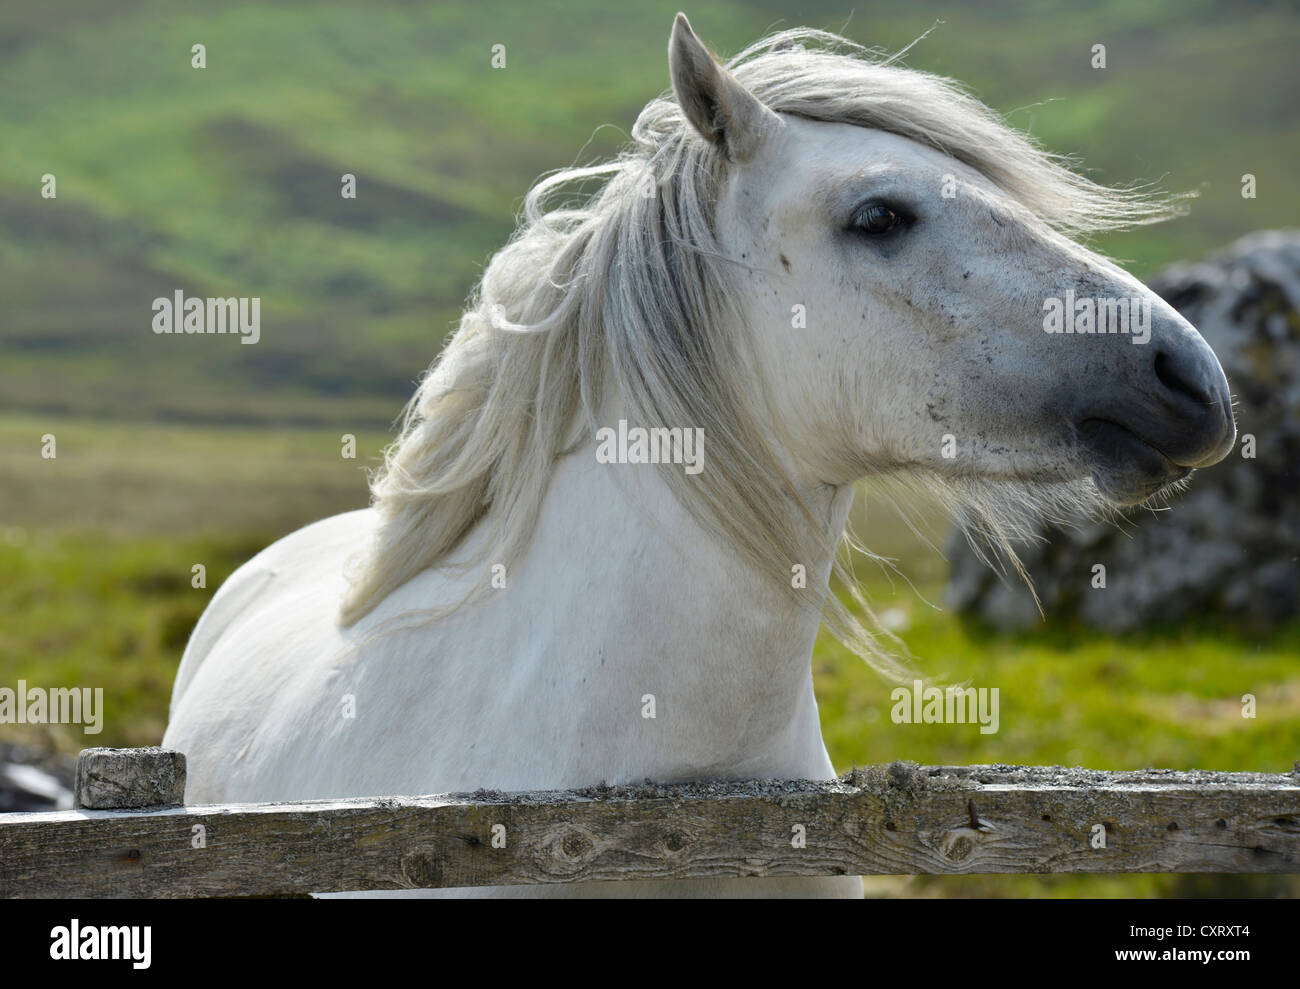 Cavallo bianco con una fluente criniera, Sutherland, Highlands scozzesi, Scotland, Regno Unito, Europa Foto Stock